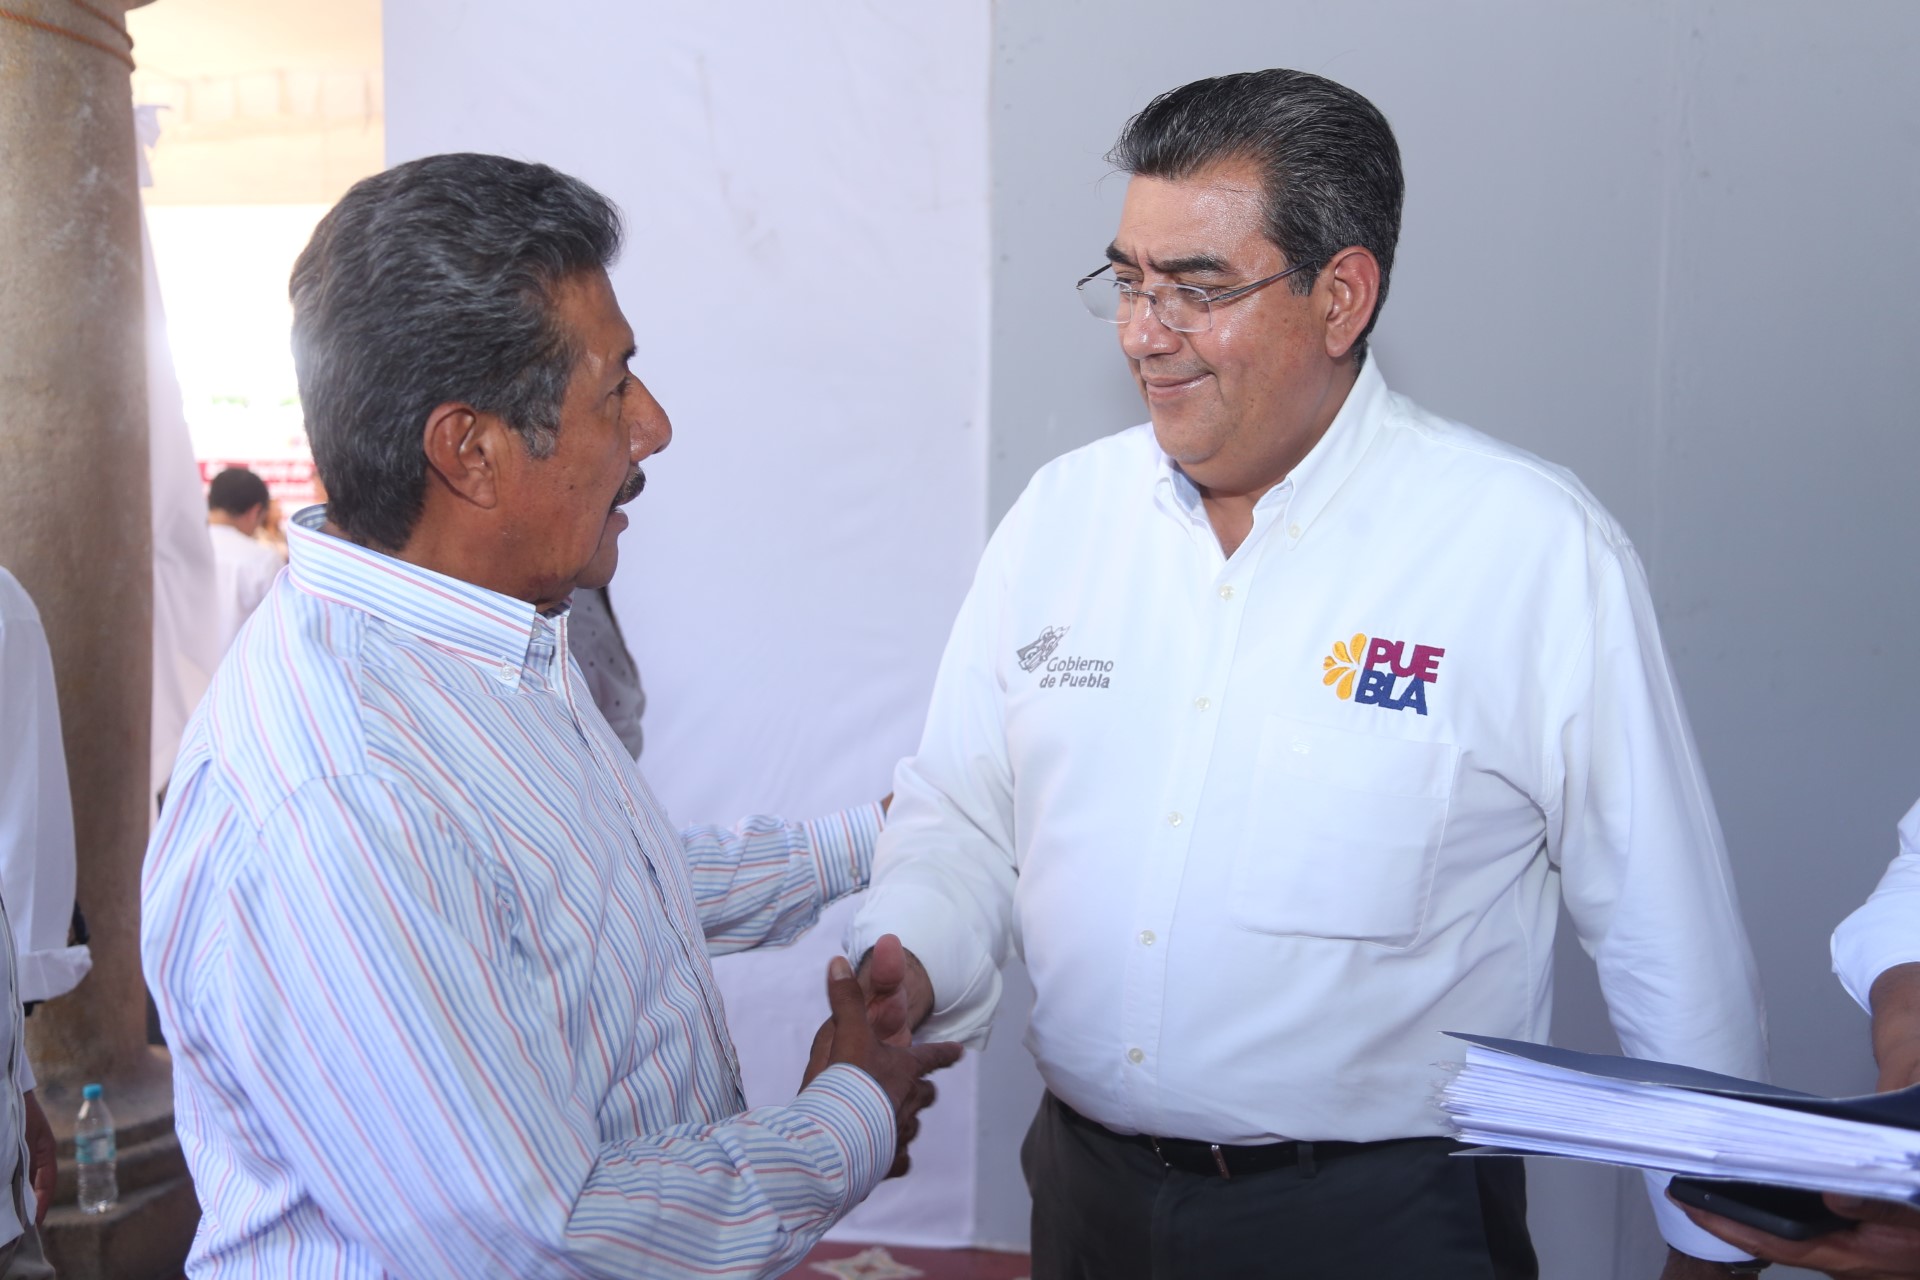 En Puebla, los gobiernos estatal y municipales suman esfuerzos por la ciudadanía, aseveró Céspedes Peregrina